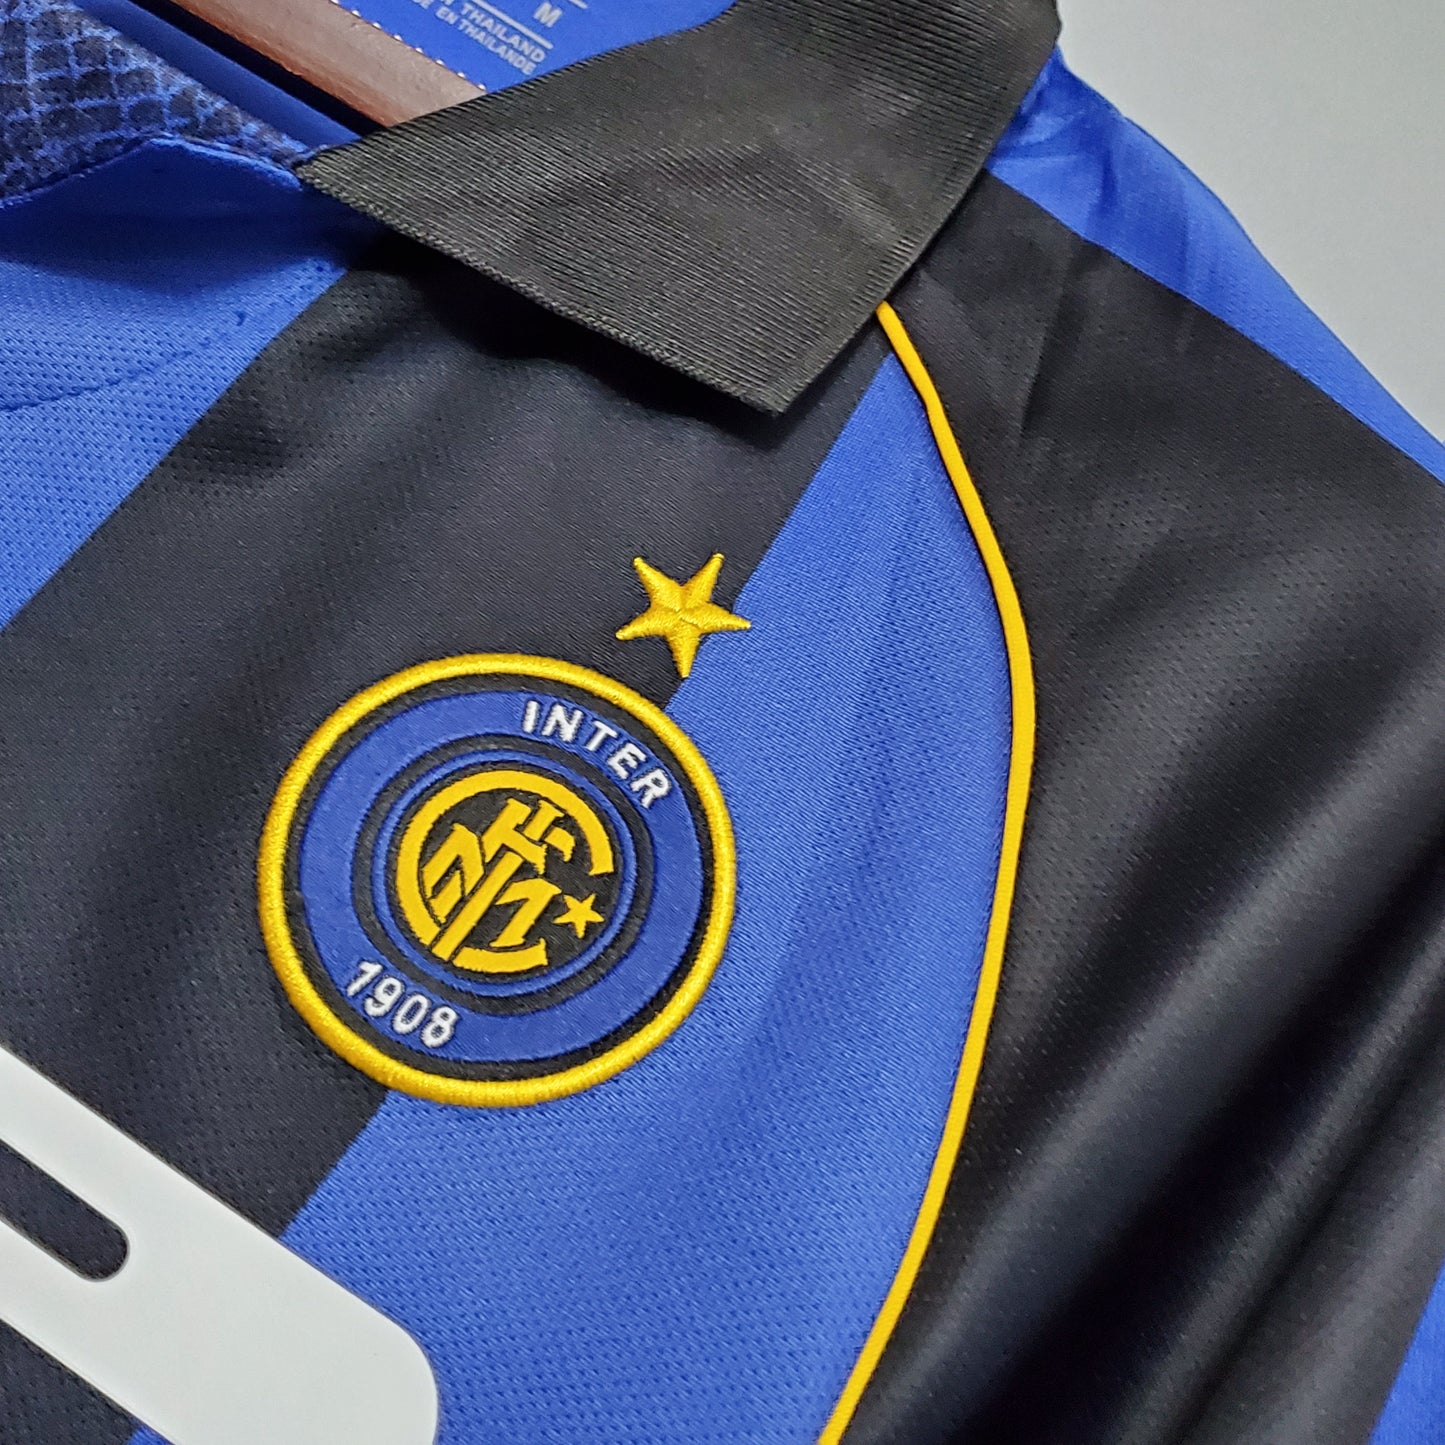 2000/01 Inter Milan Home Shirt